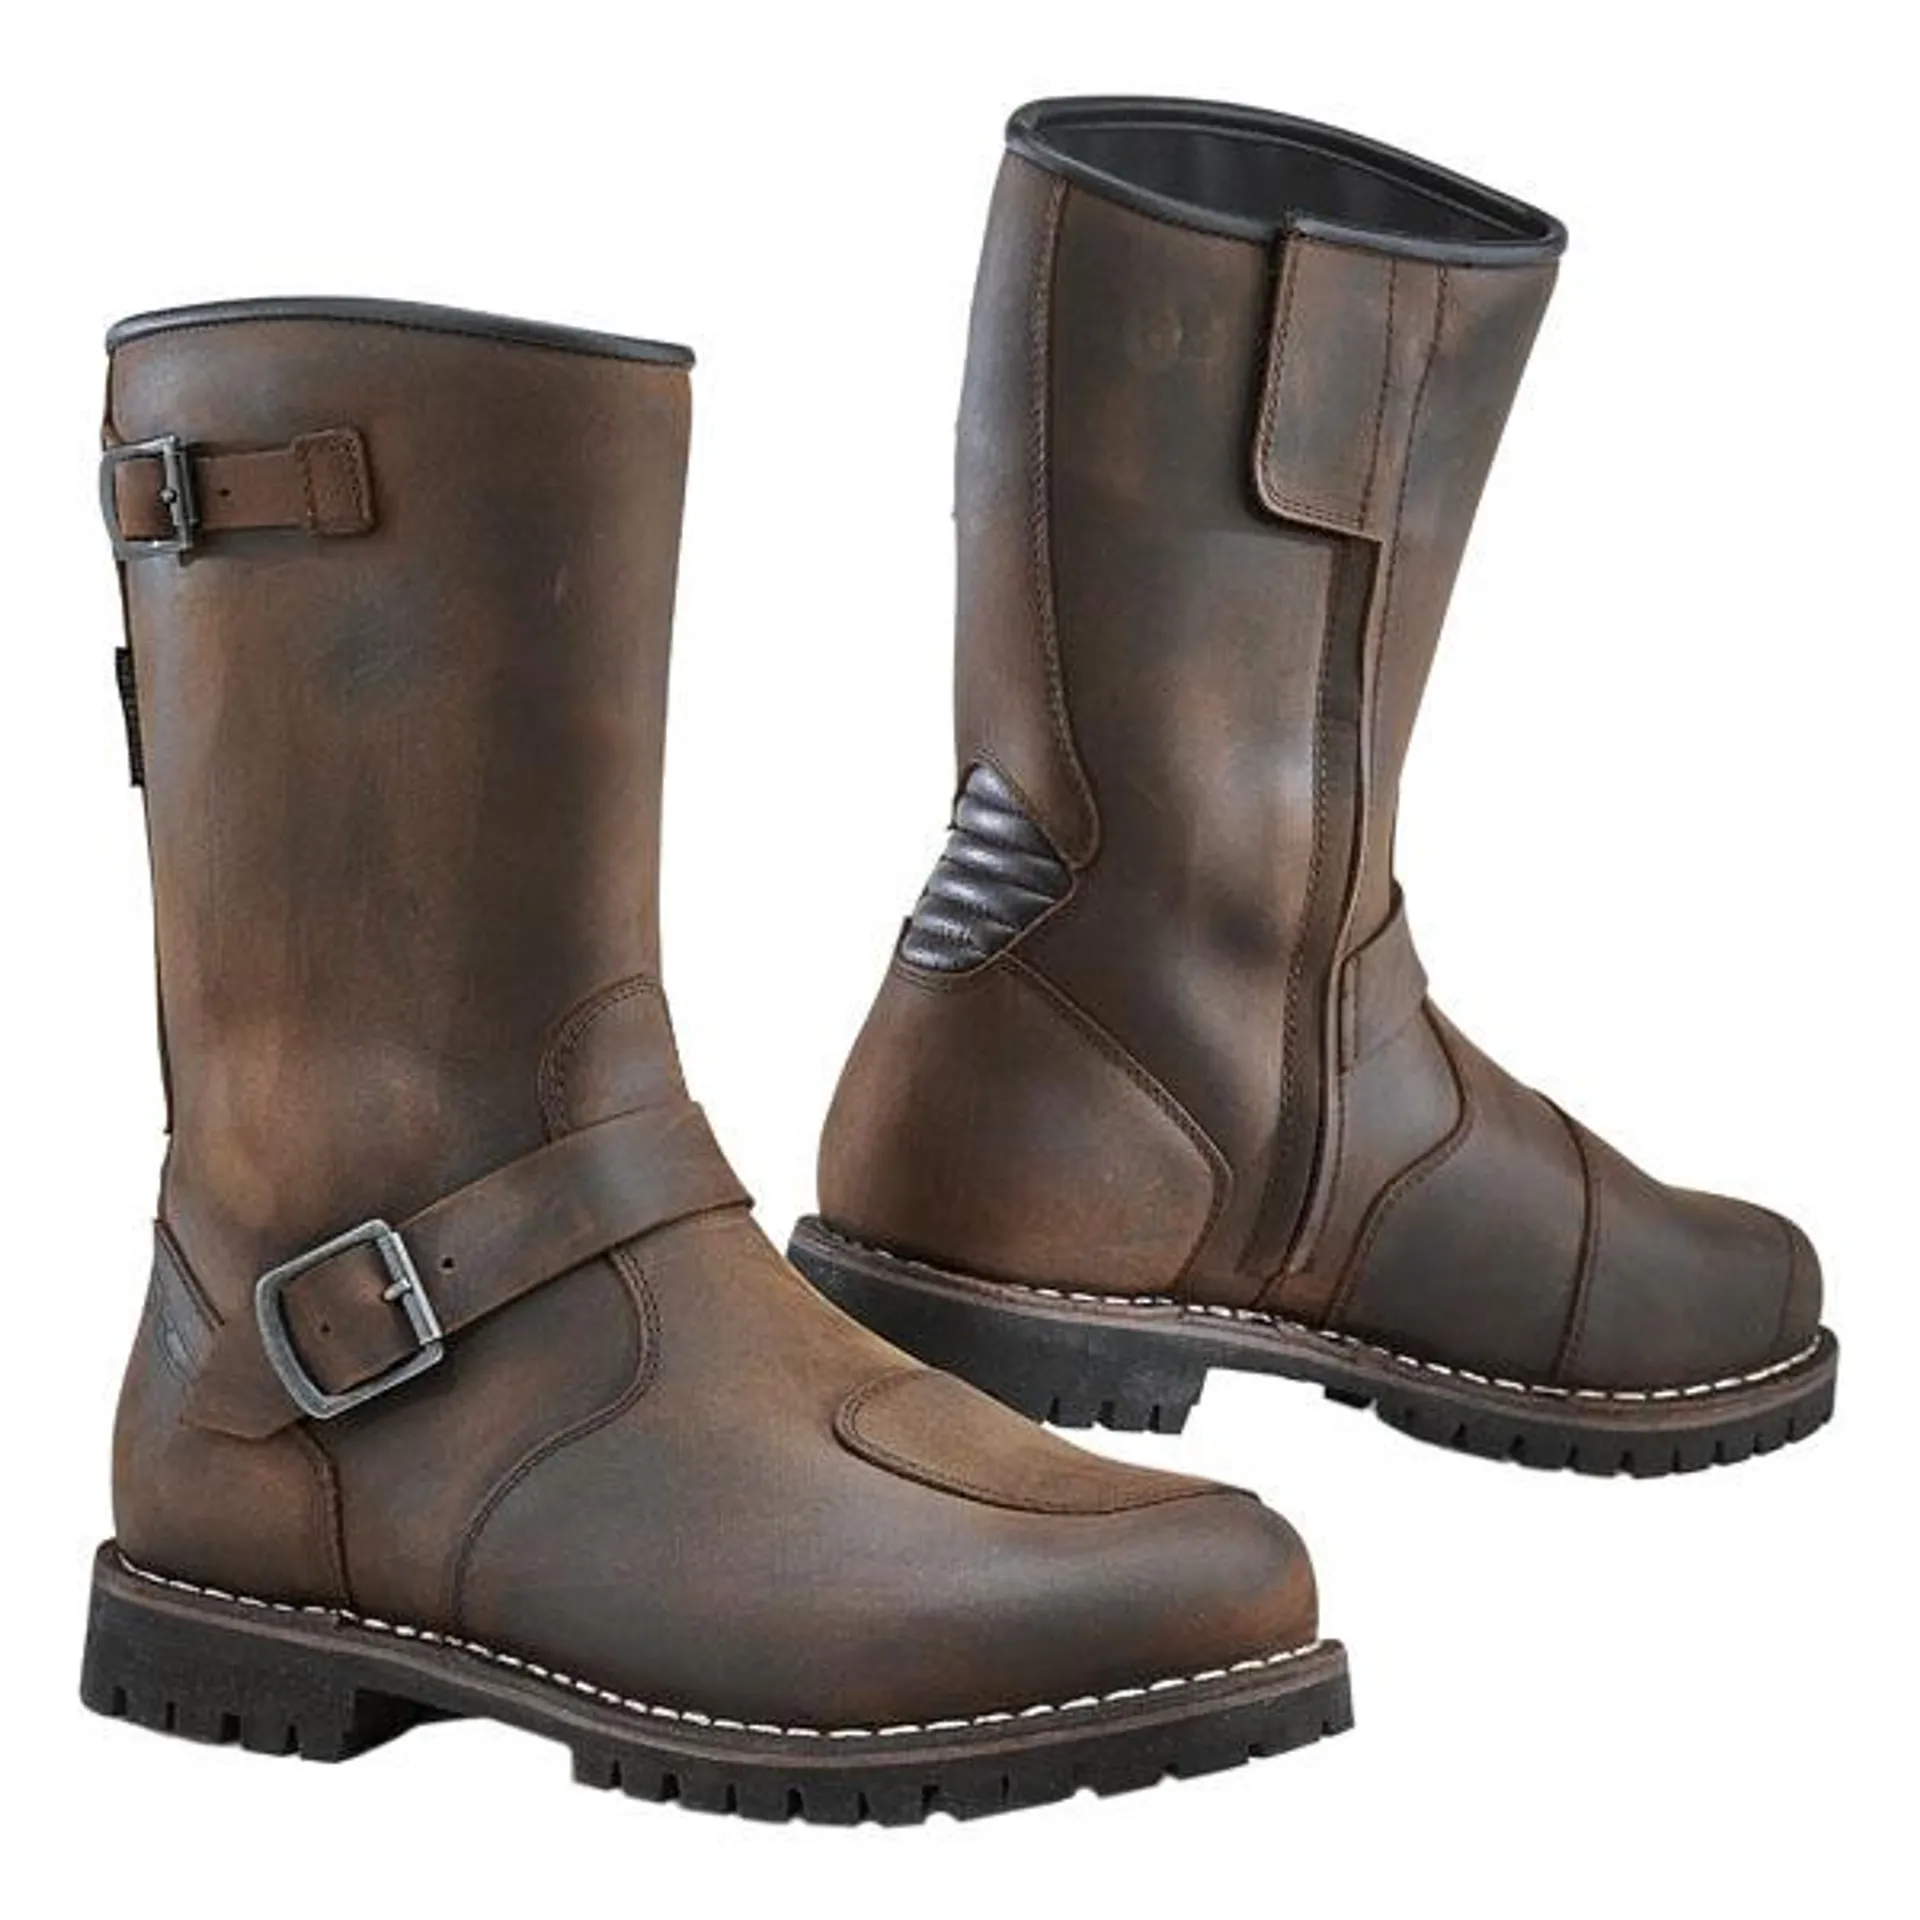 TCX Fuel Waterproof Boots - Brown